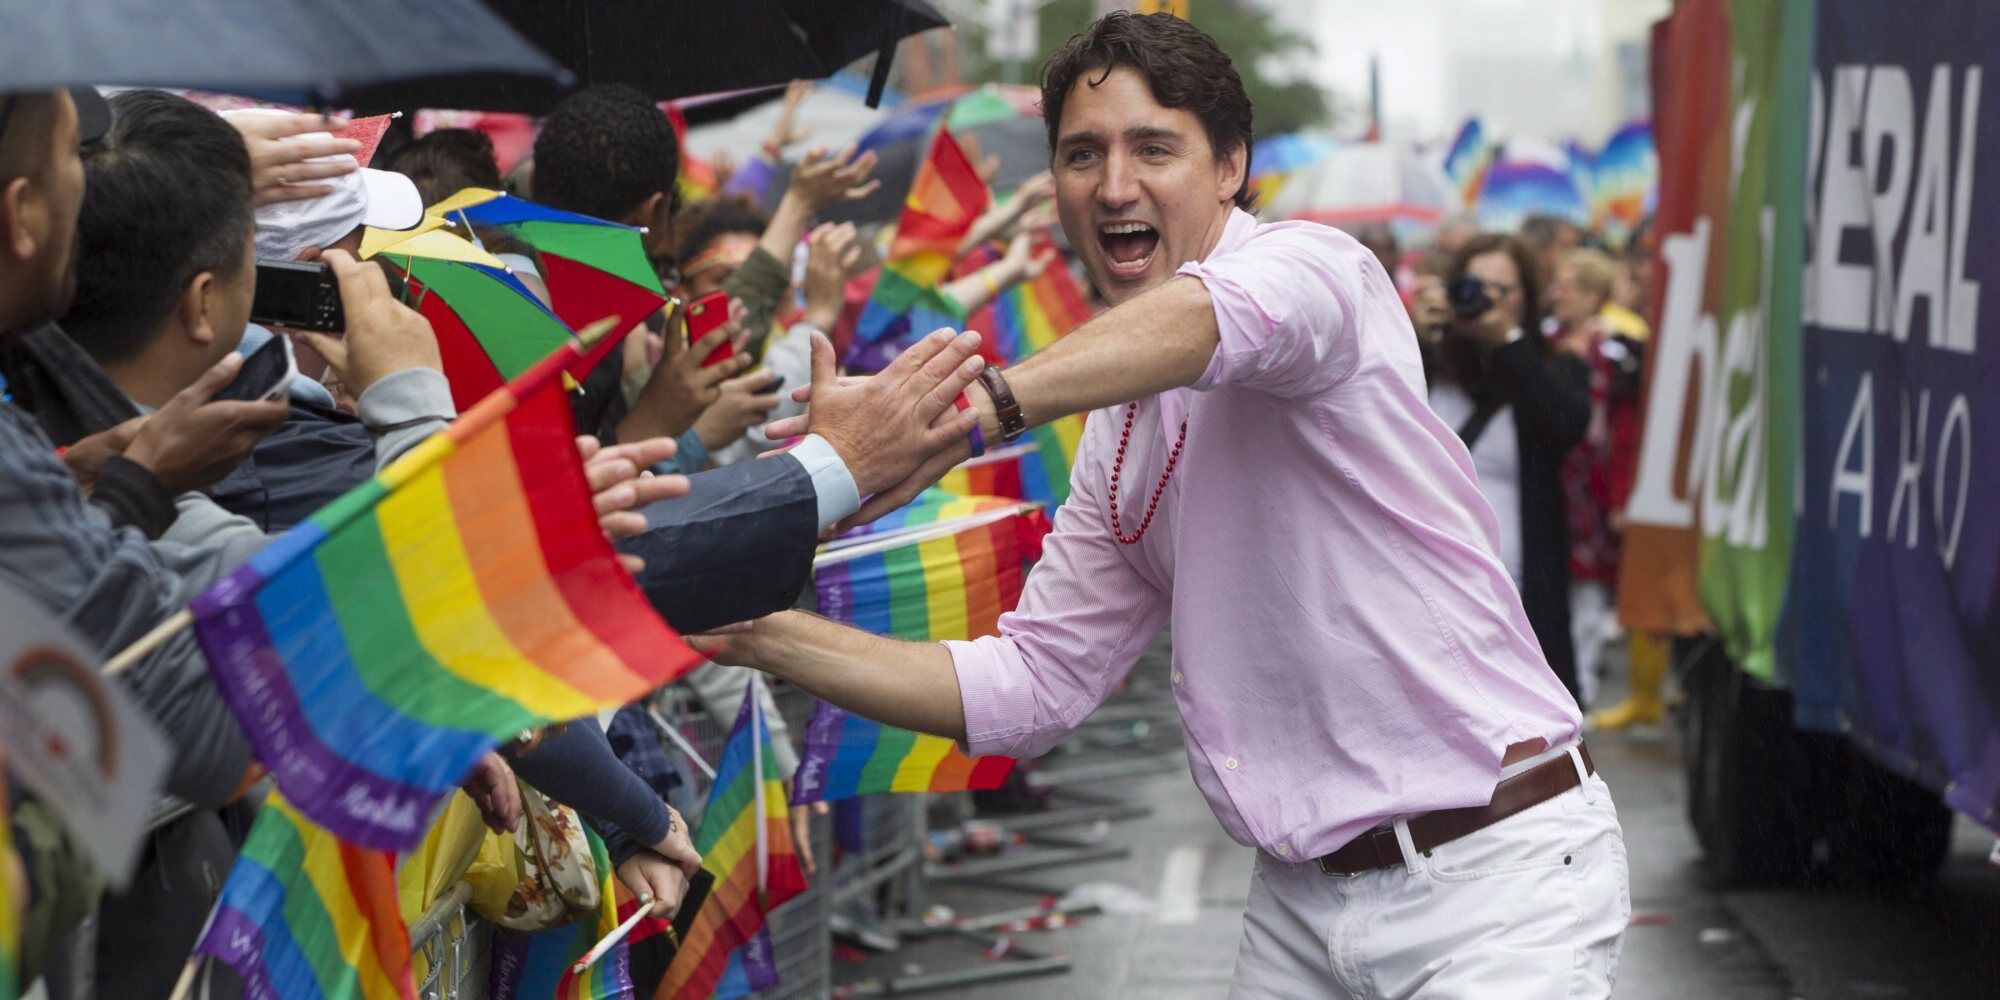 加拿大總理將參加同志大遊行